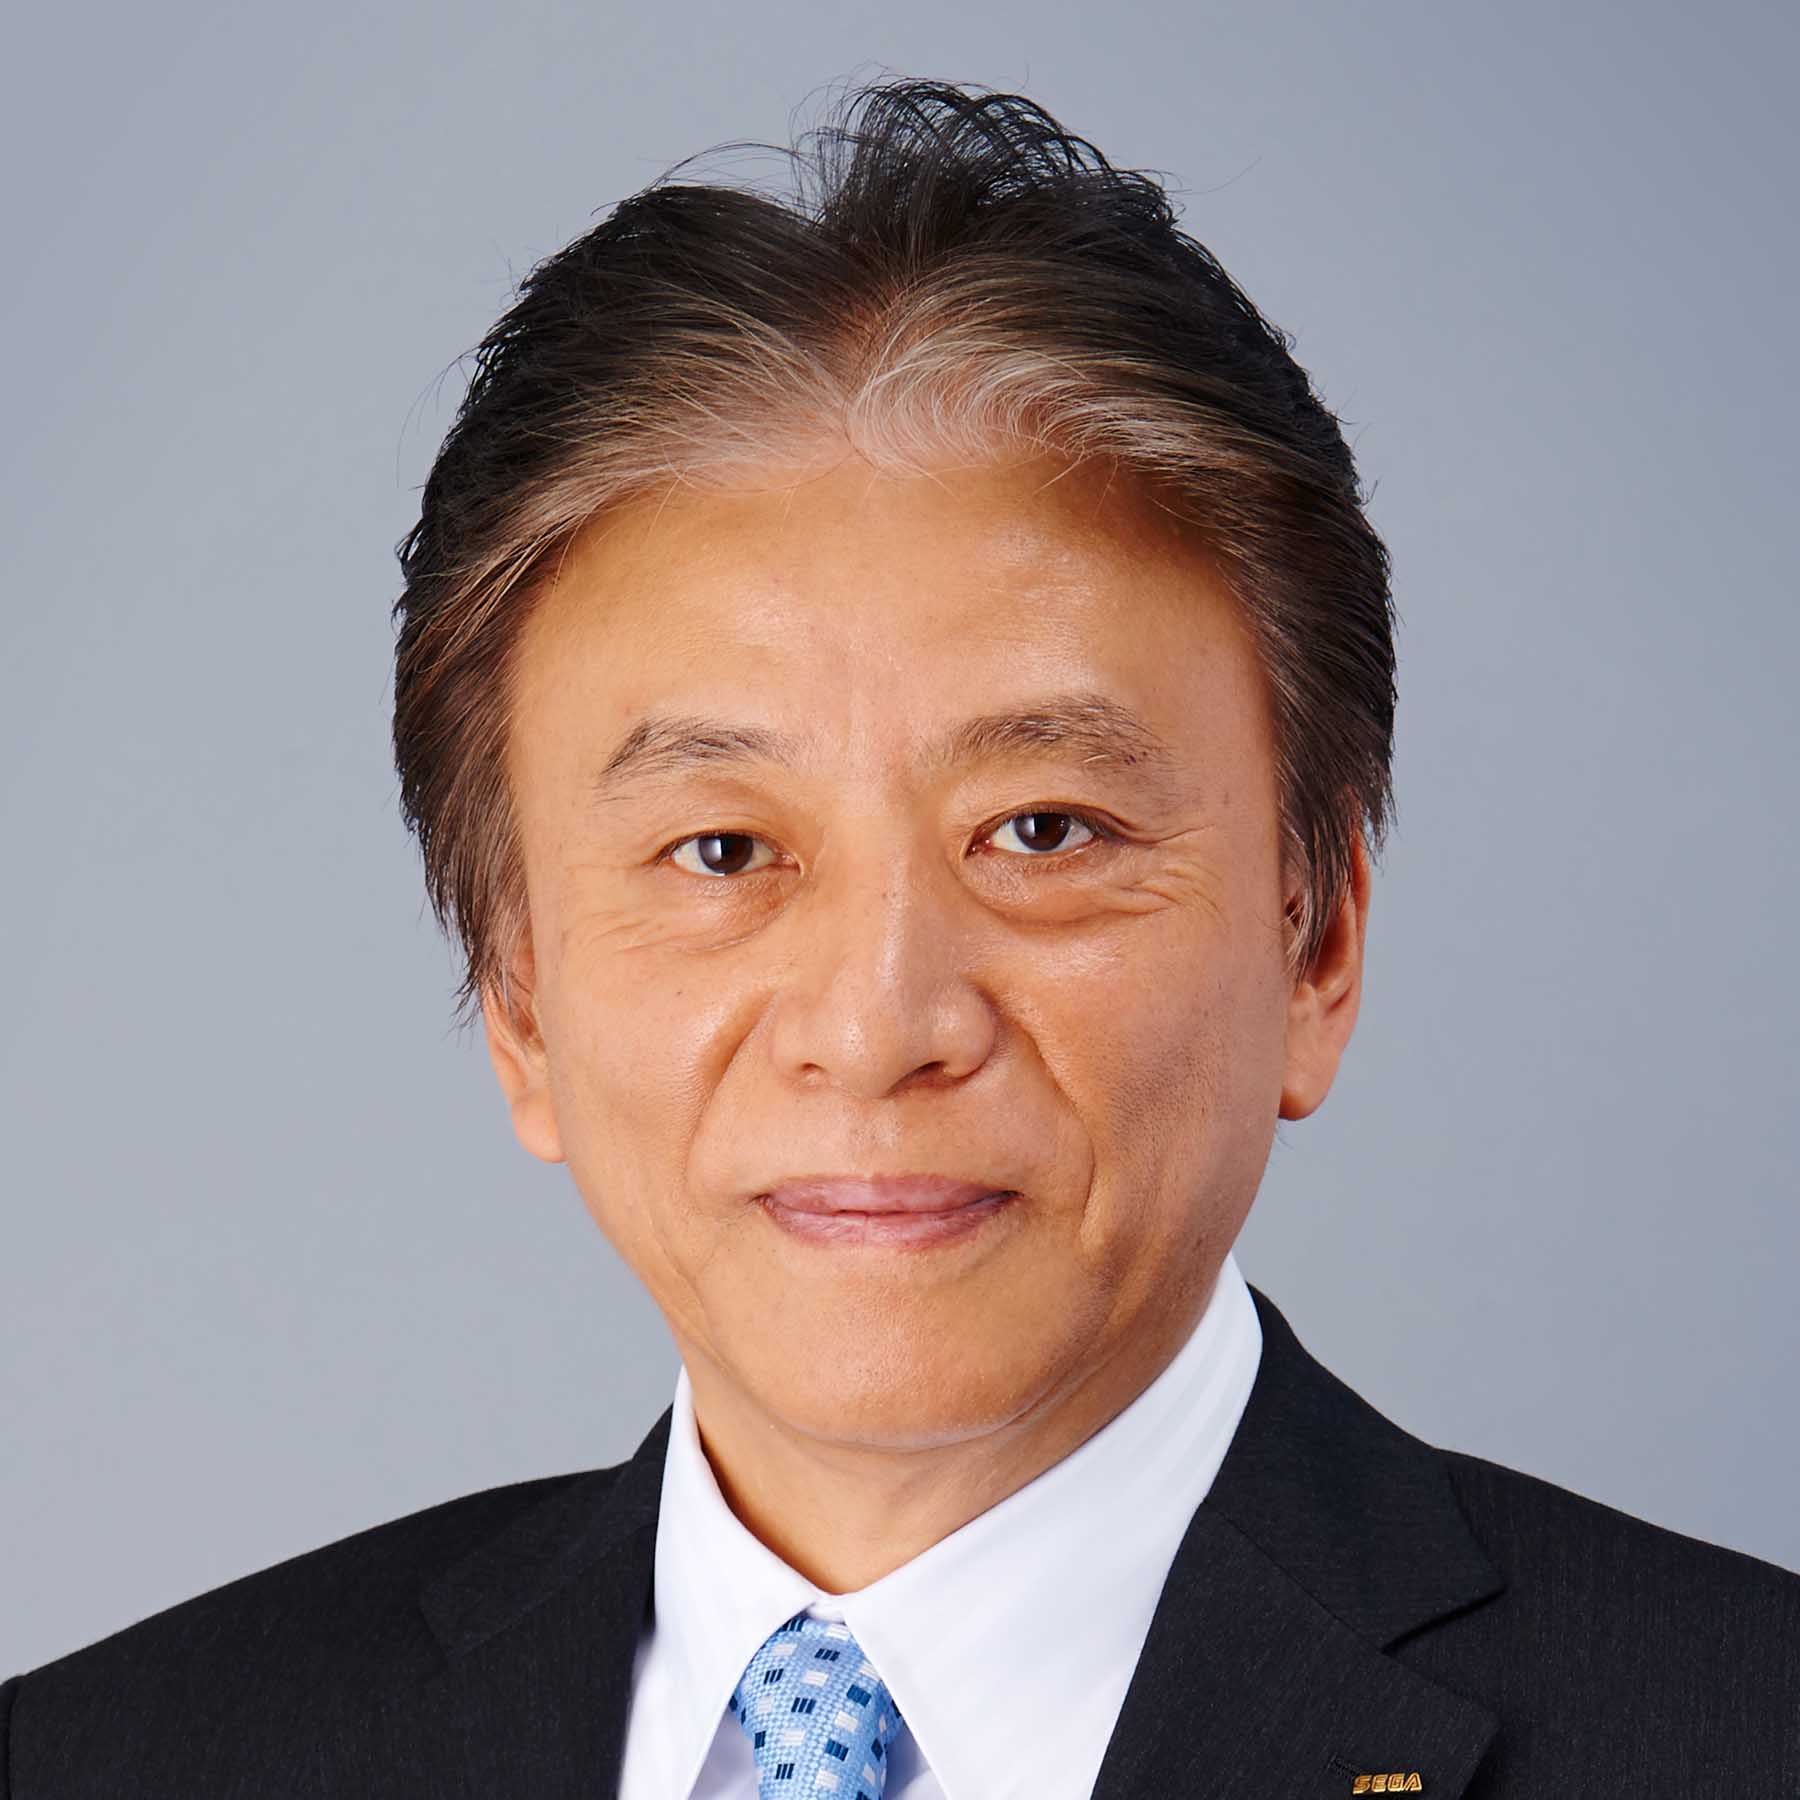 일반사단법인 컴퓨터 엔터테인먼트 협회(CESA) 회장 오카무라 히데키